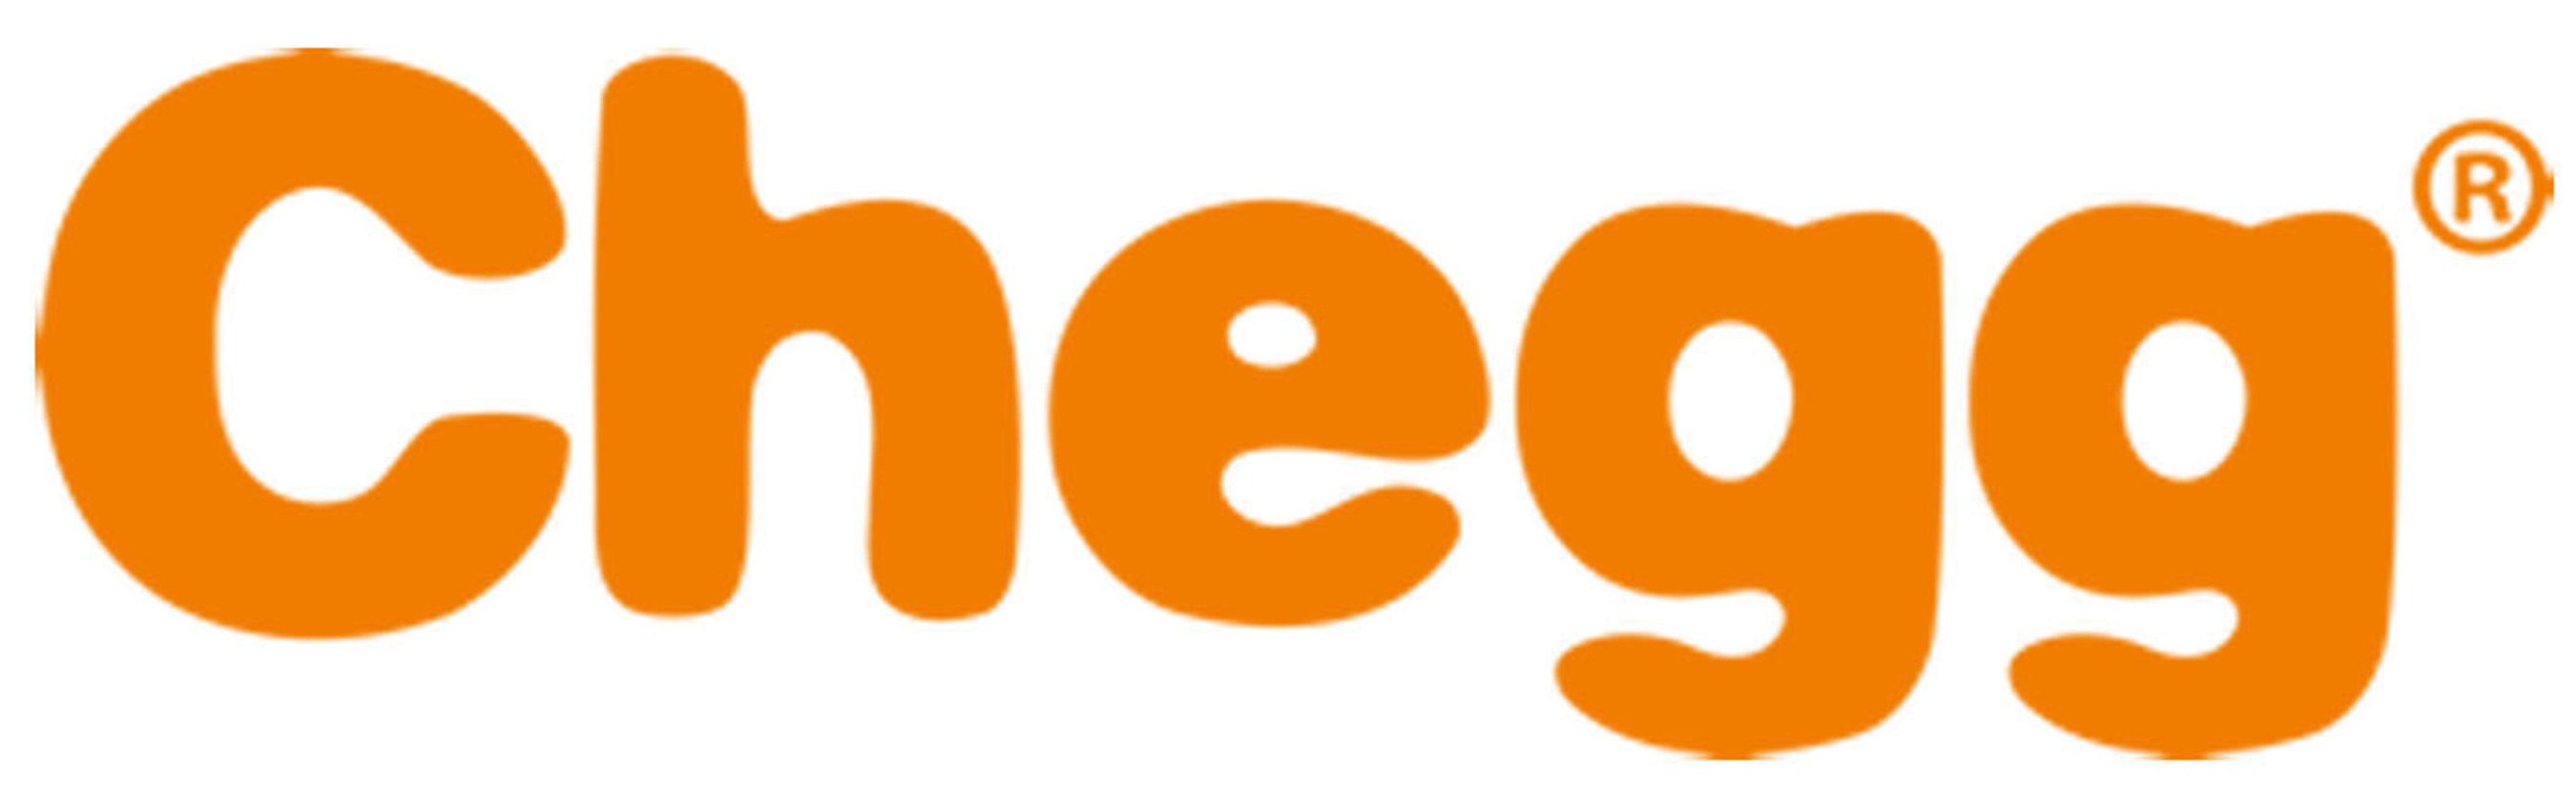 Chegg Logo.